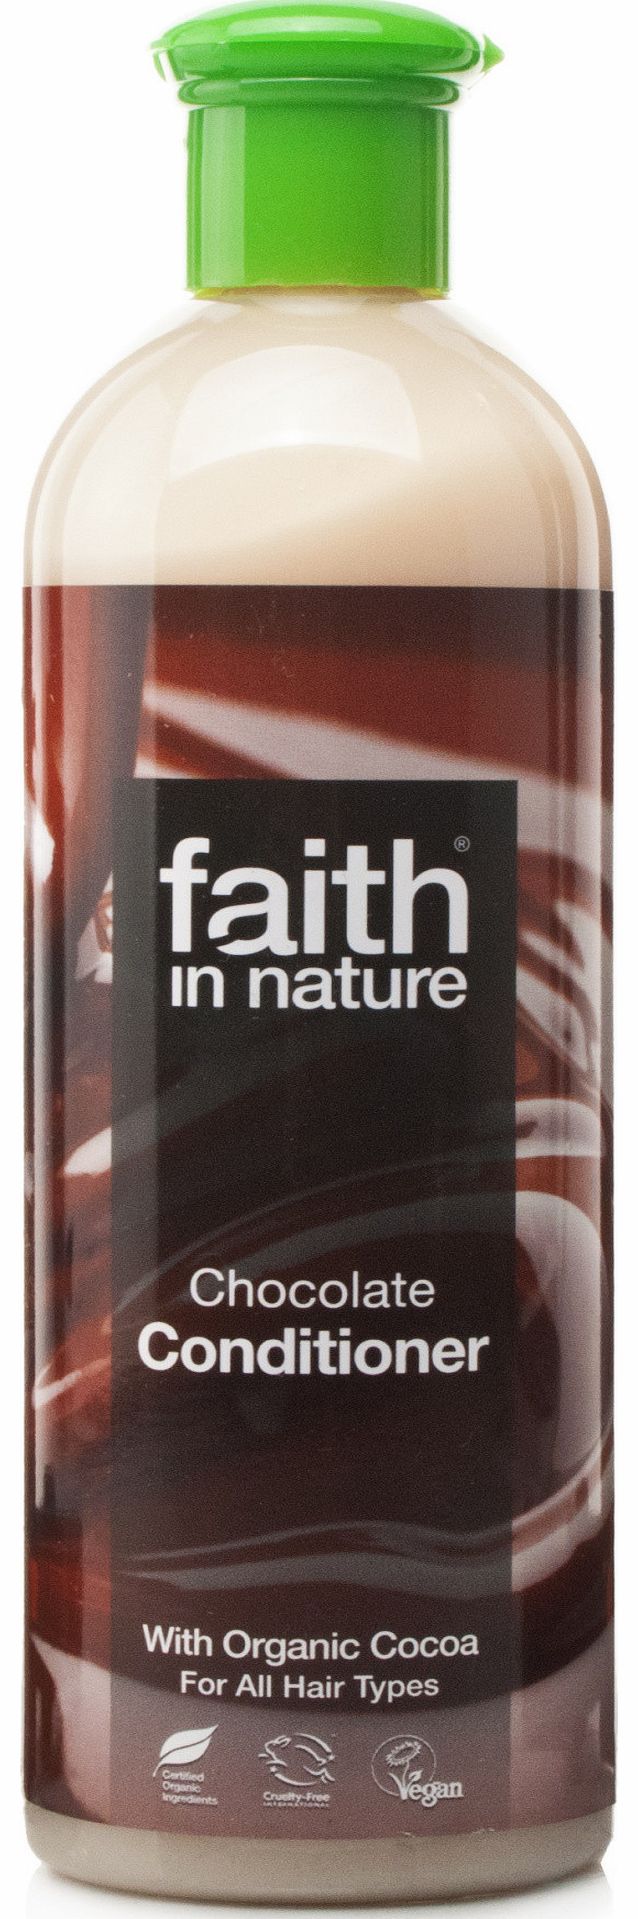 Faith in Nature Chocolate Conditioner